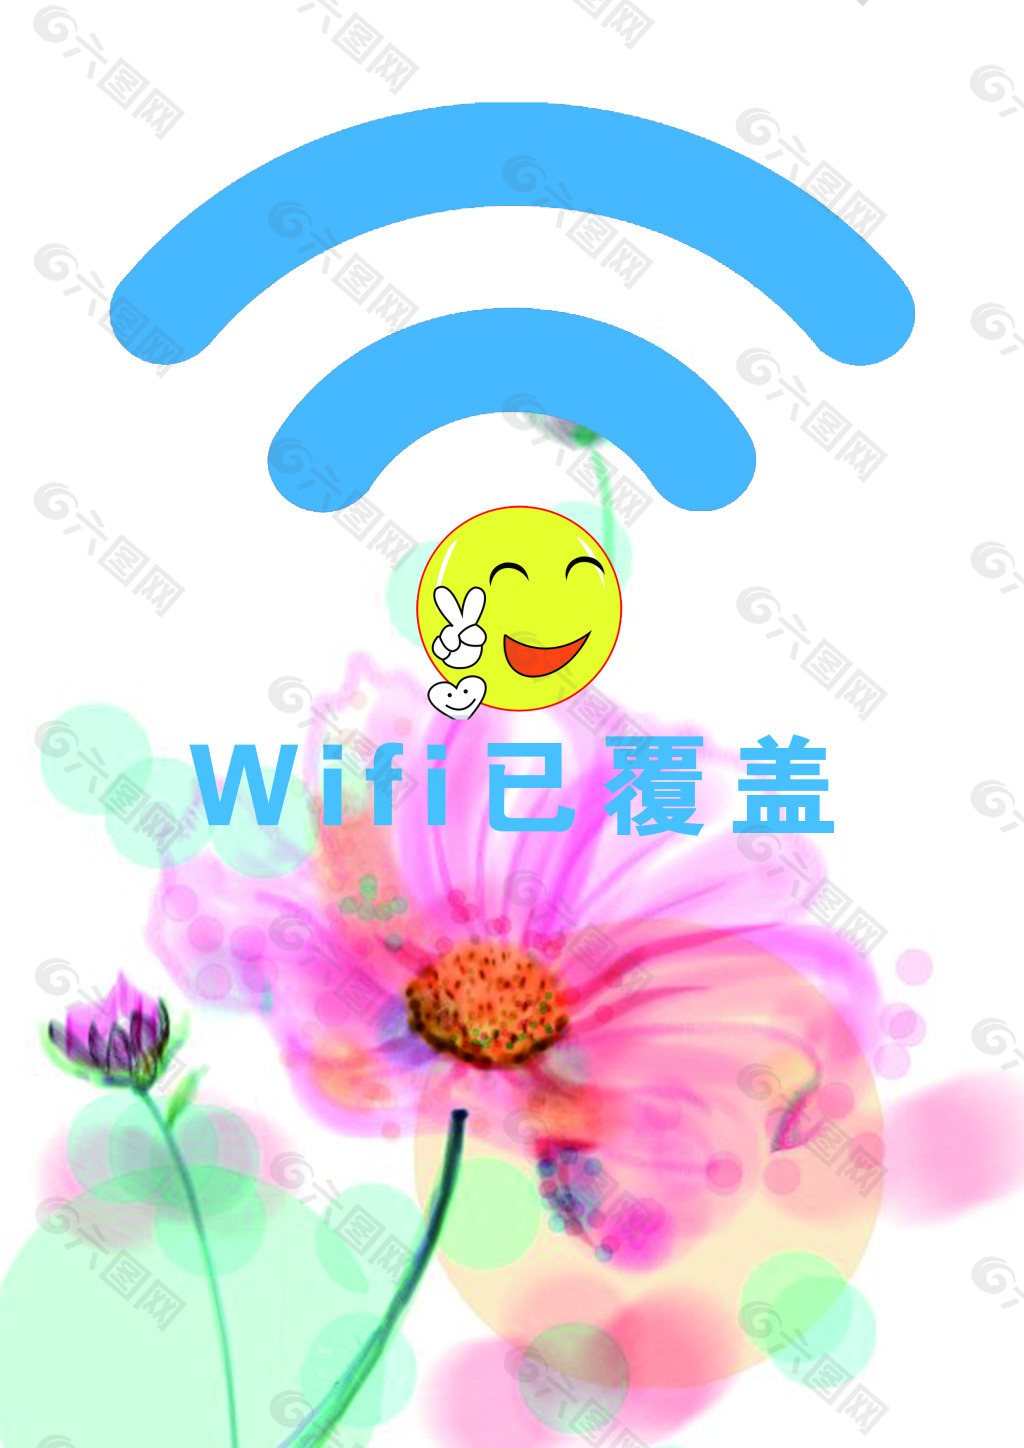 wifi海报